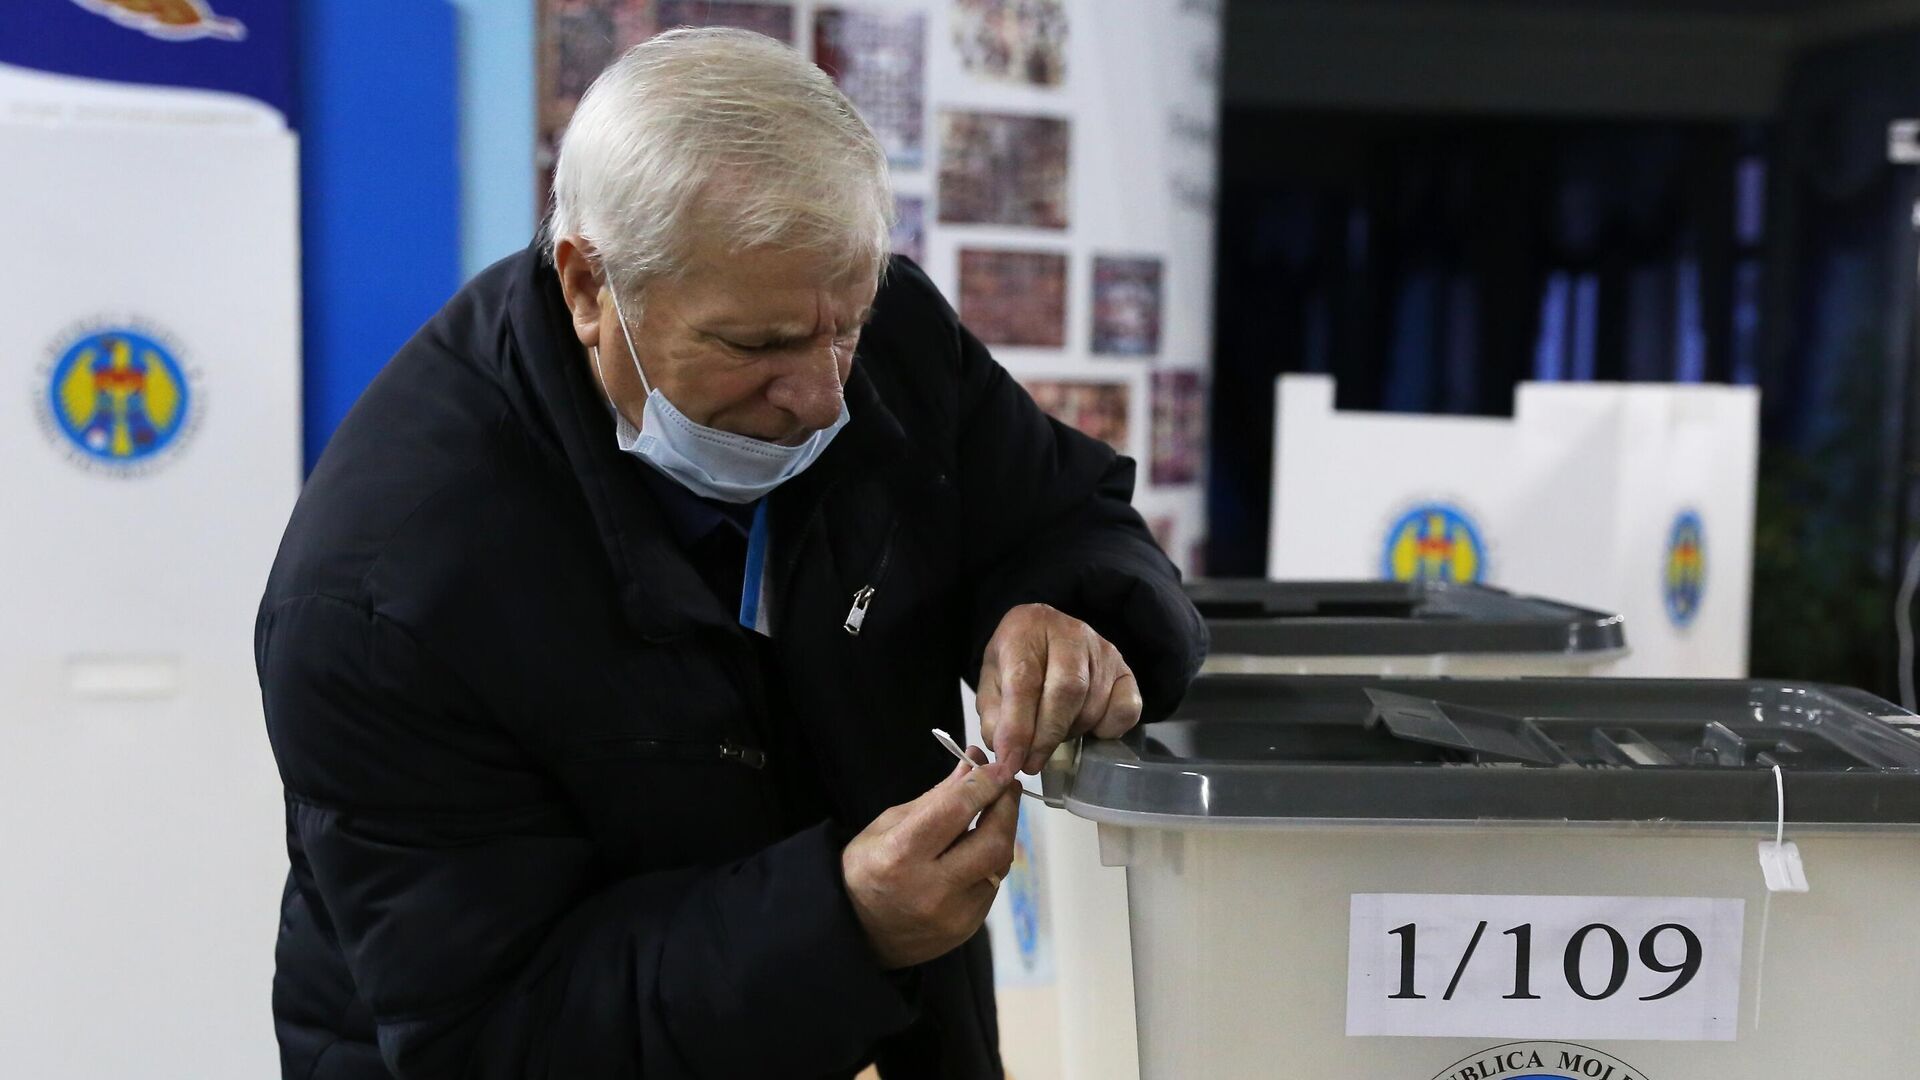 Член избирательной комиссии пломбирует избирательную урну на избирательном участке в Кишиневе - РИА Новости, 1920, 15.11.2020